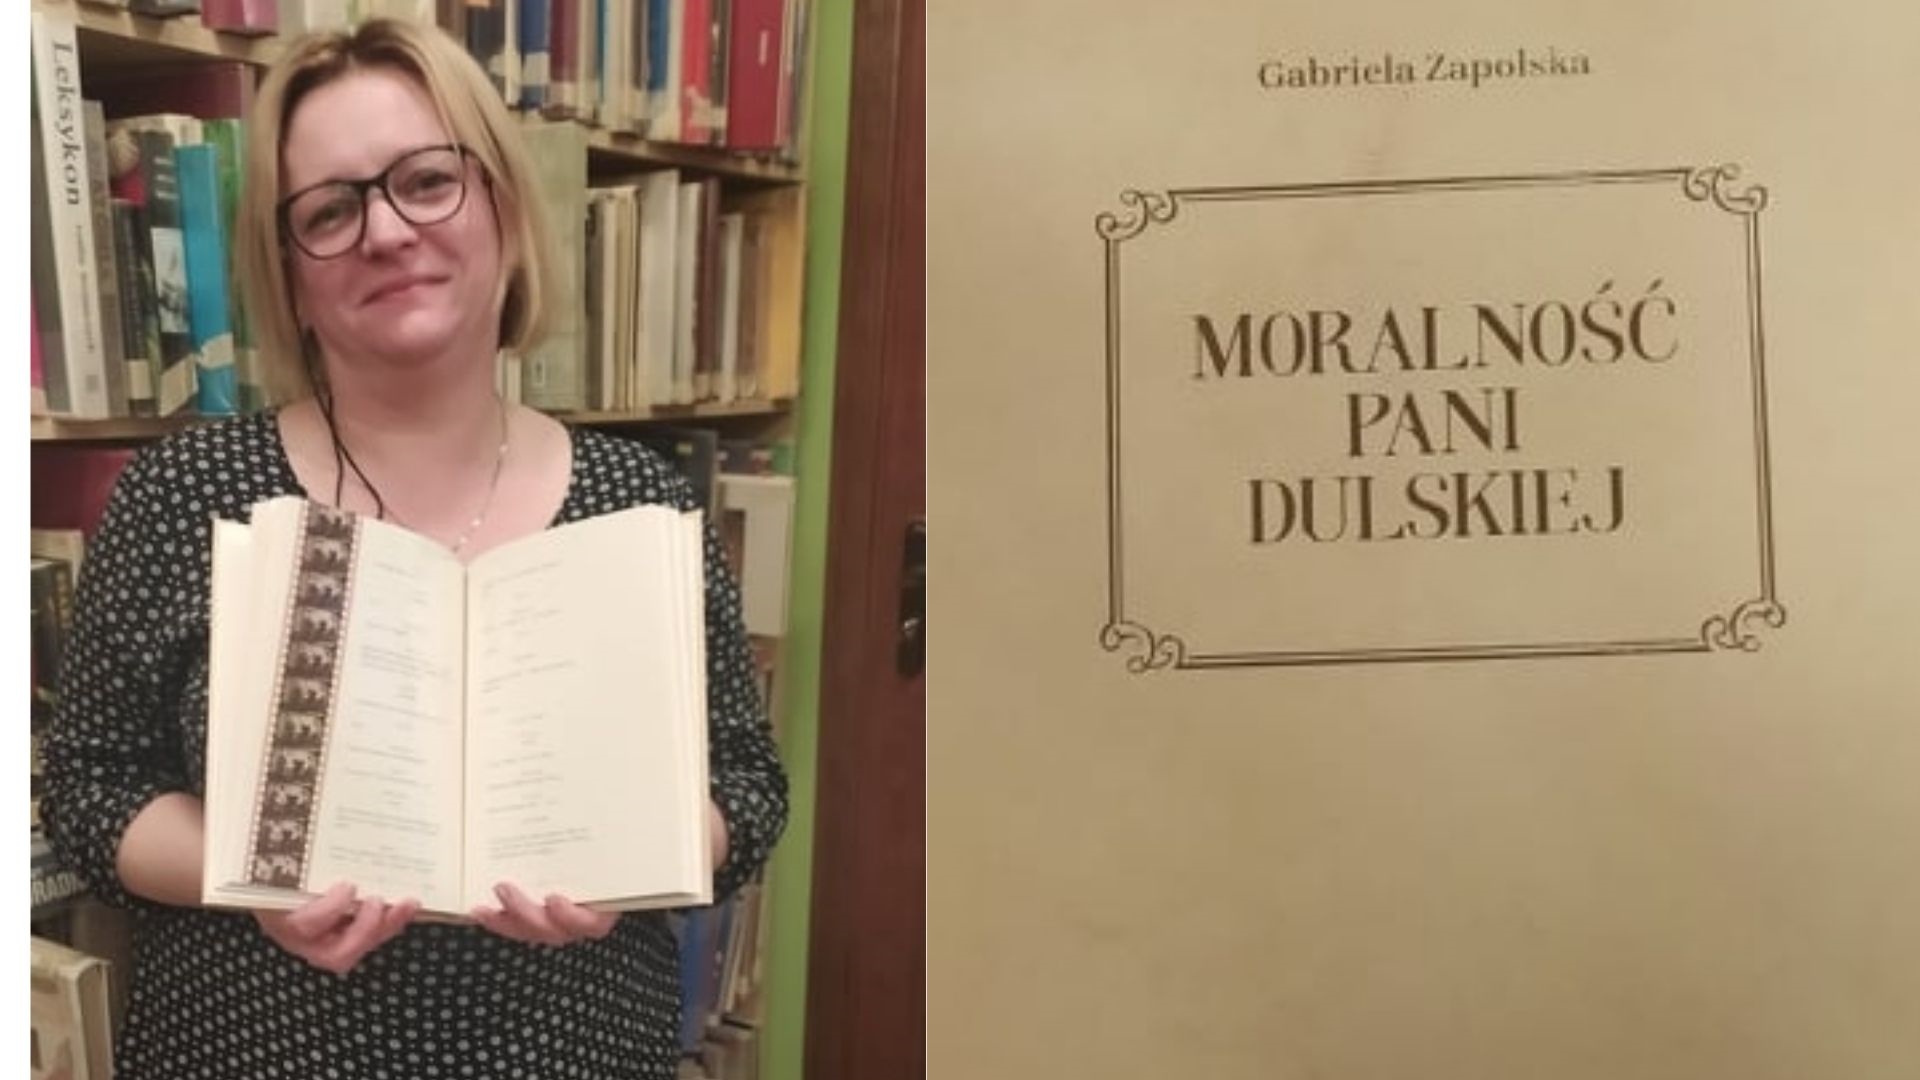 Kobieta z owartą książką w ręce oraz zdjęcie okładki książki z napisem: Gabriela Zapolska Moralność Pani Dulskiej.